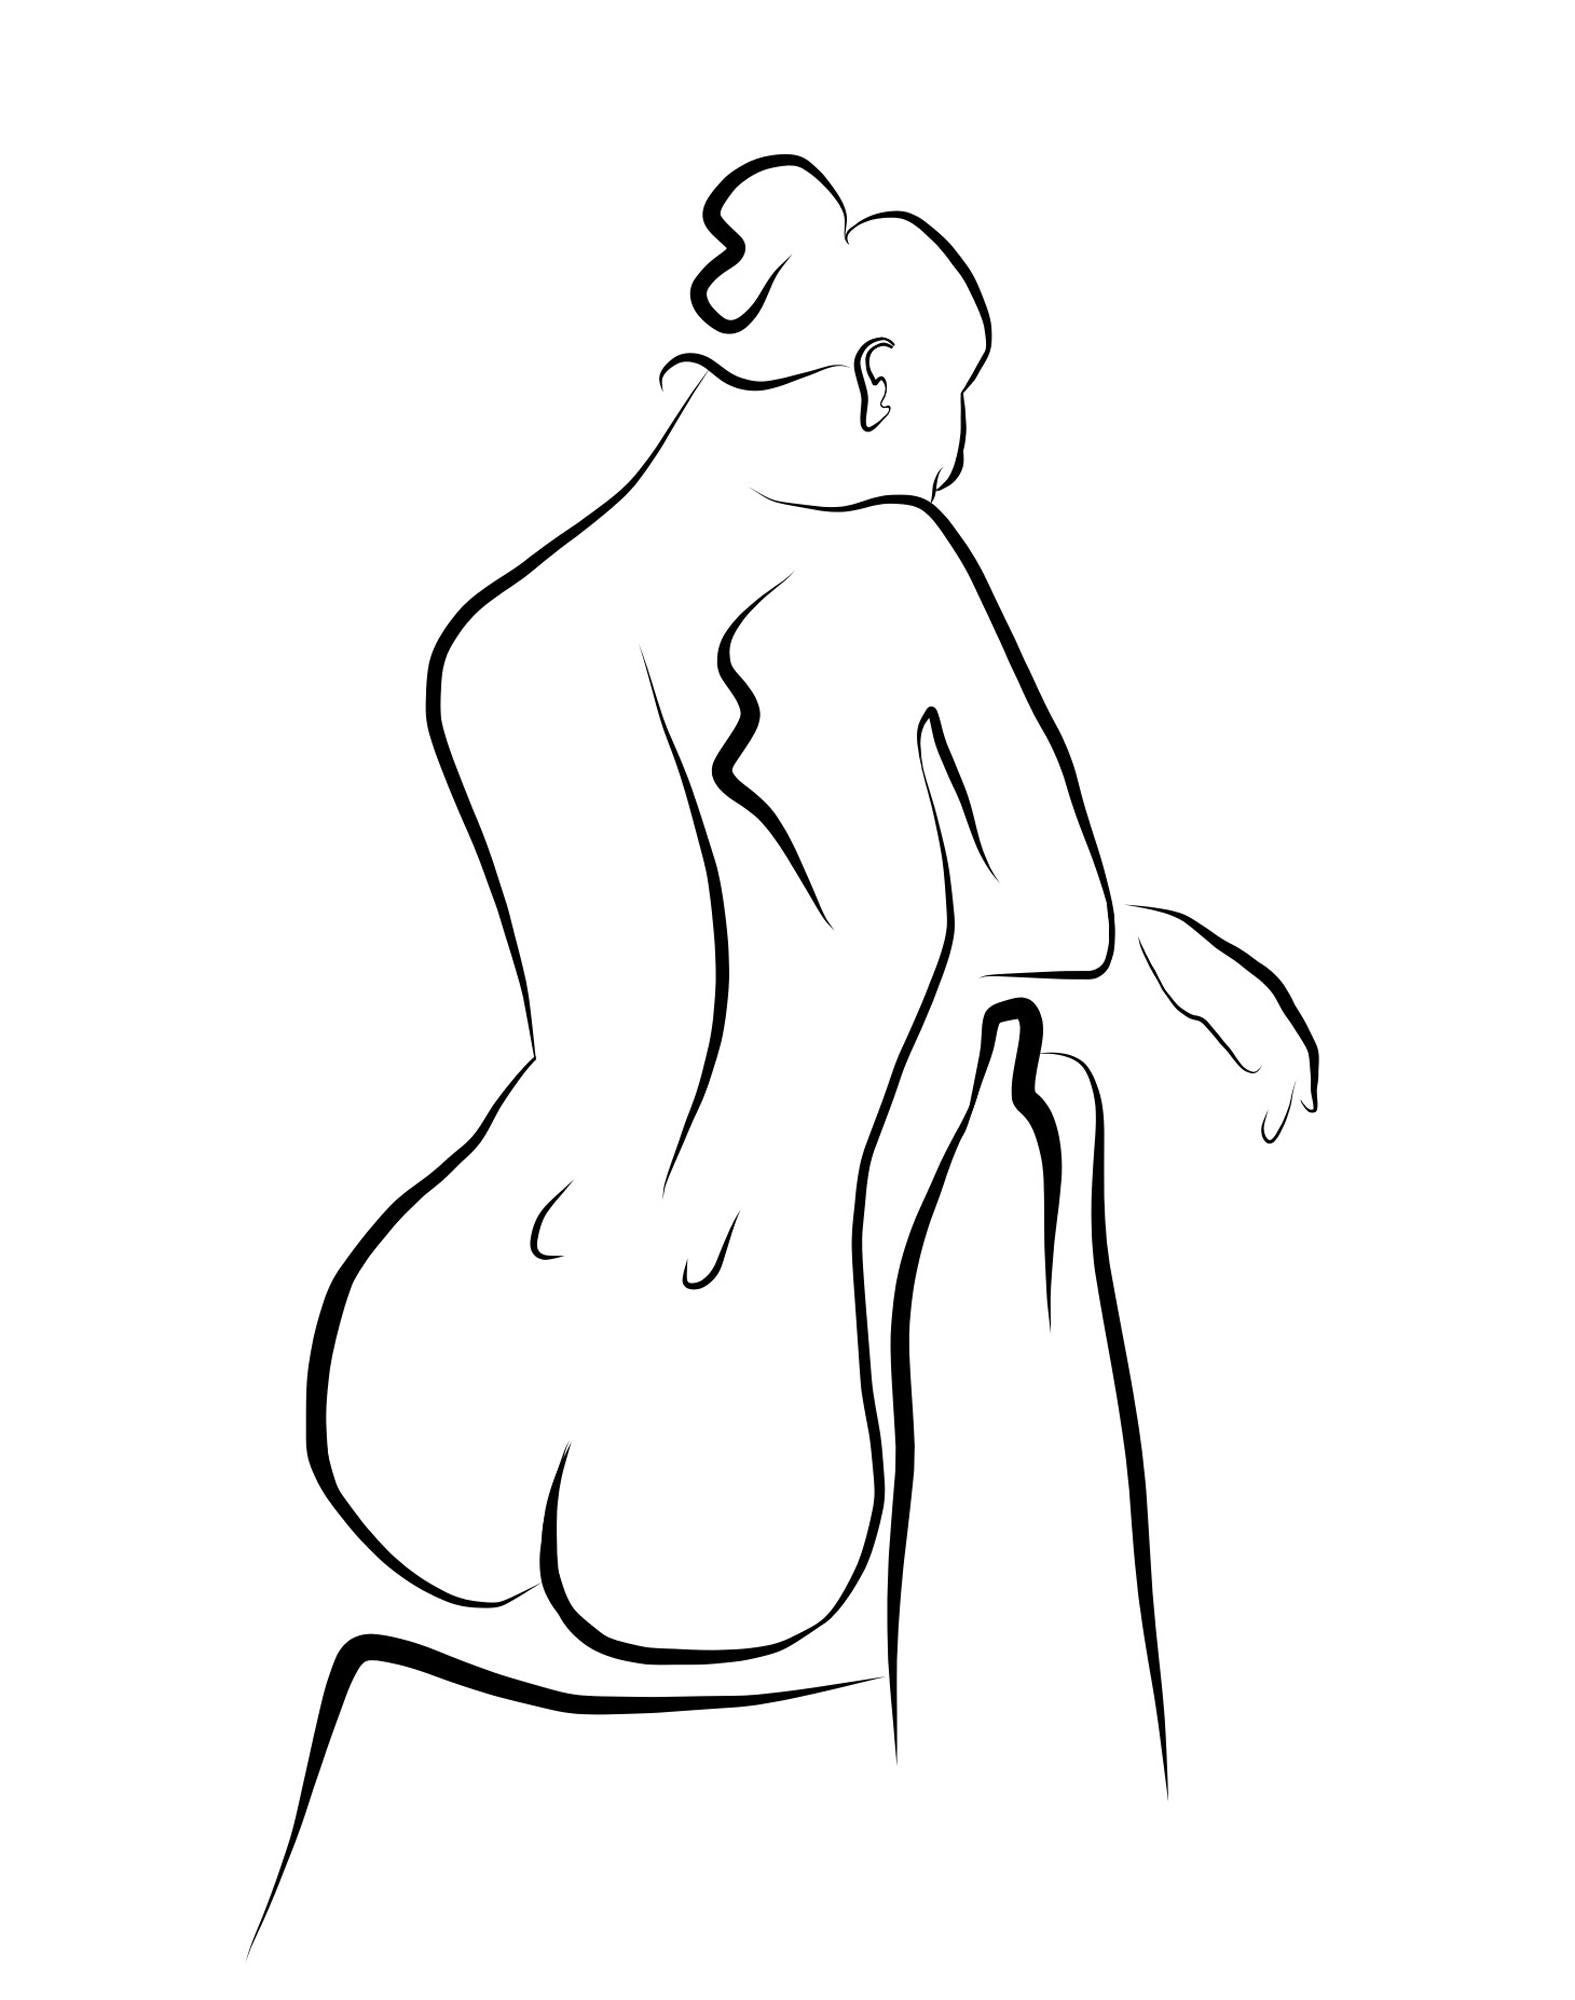 Haiku n° 57 - Dessin numérique d'un nu féminin assis depuis l'arrière